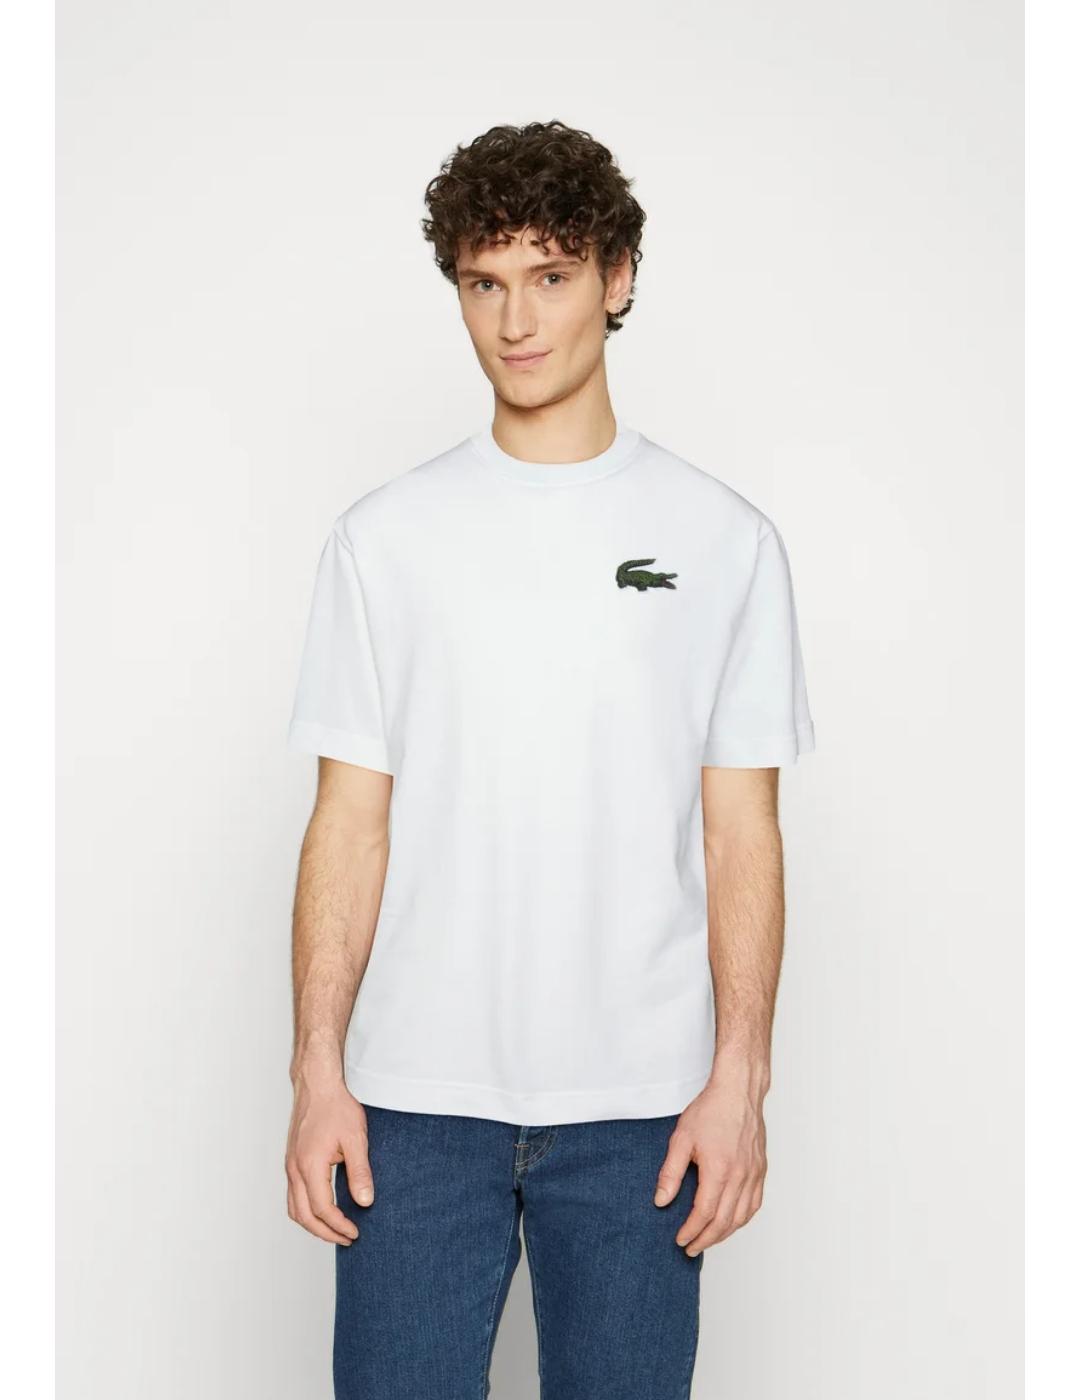 Camiseta Lacoste Loose blanca para unisex